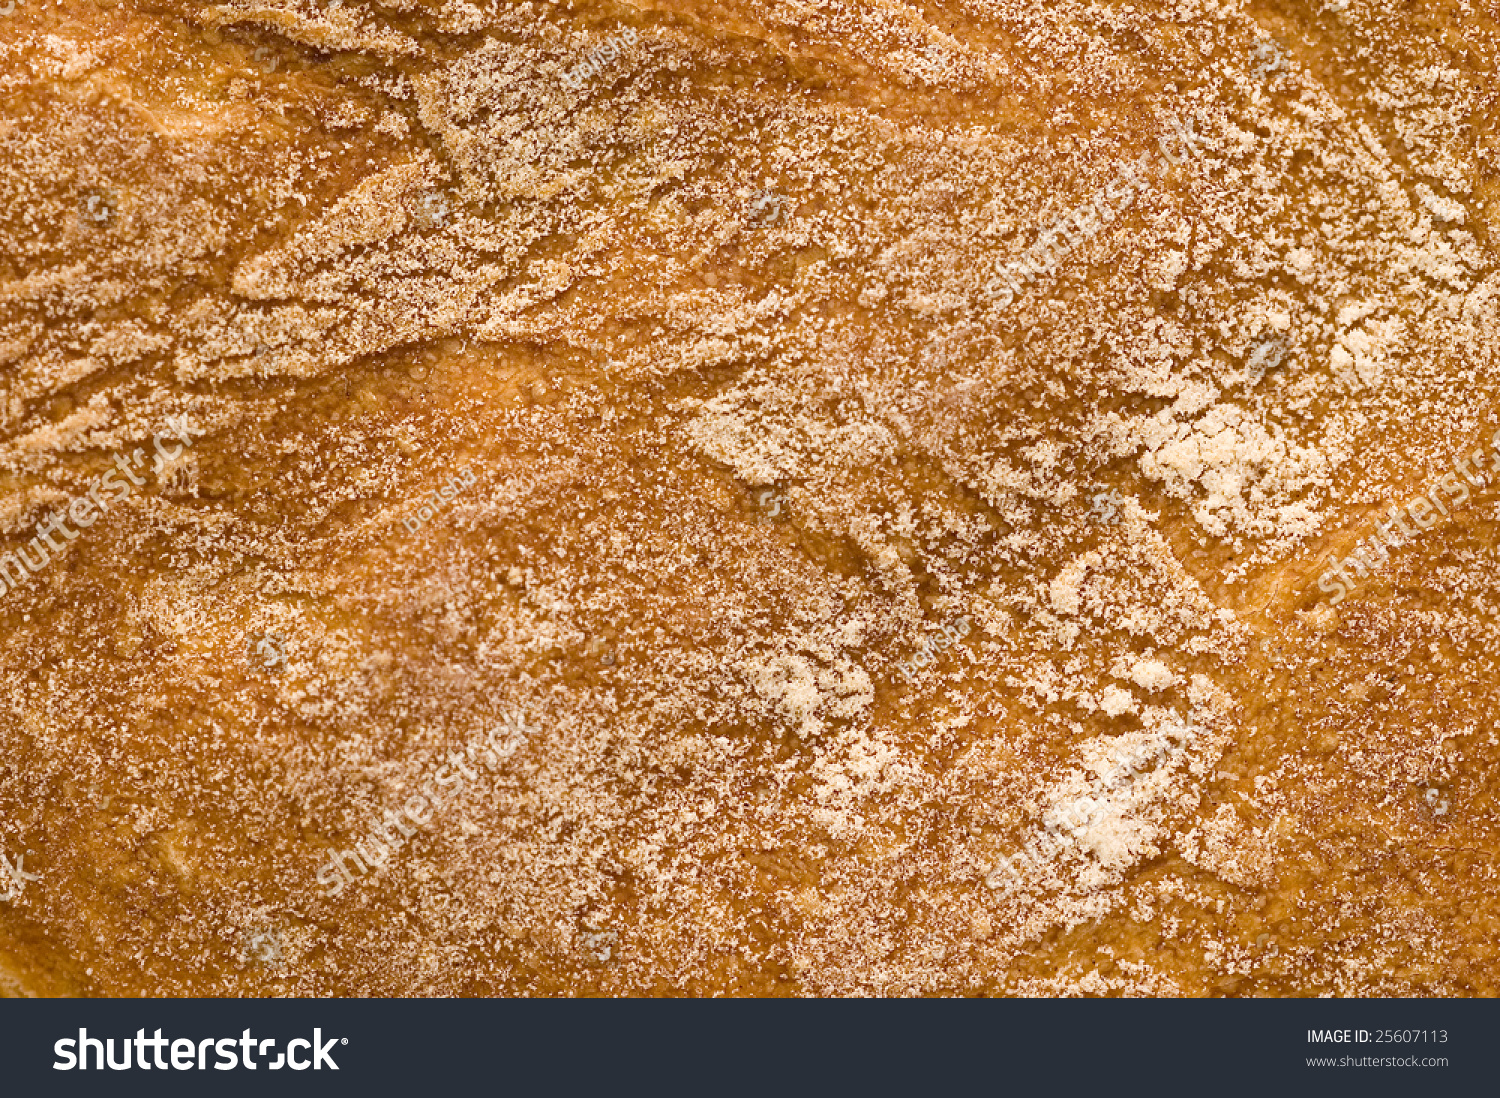 Текстура хлеба бесшовная